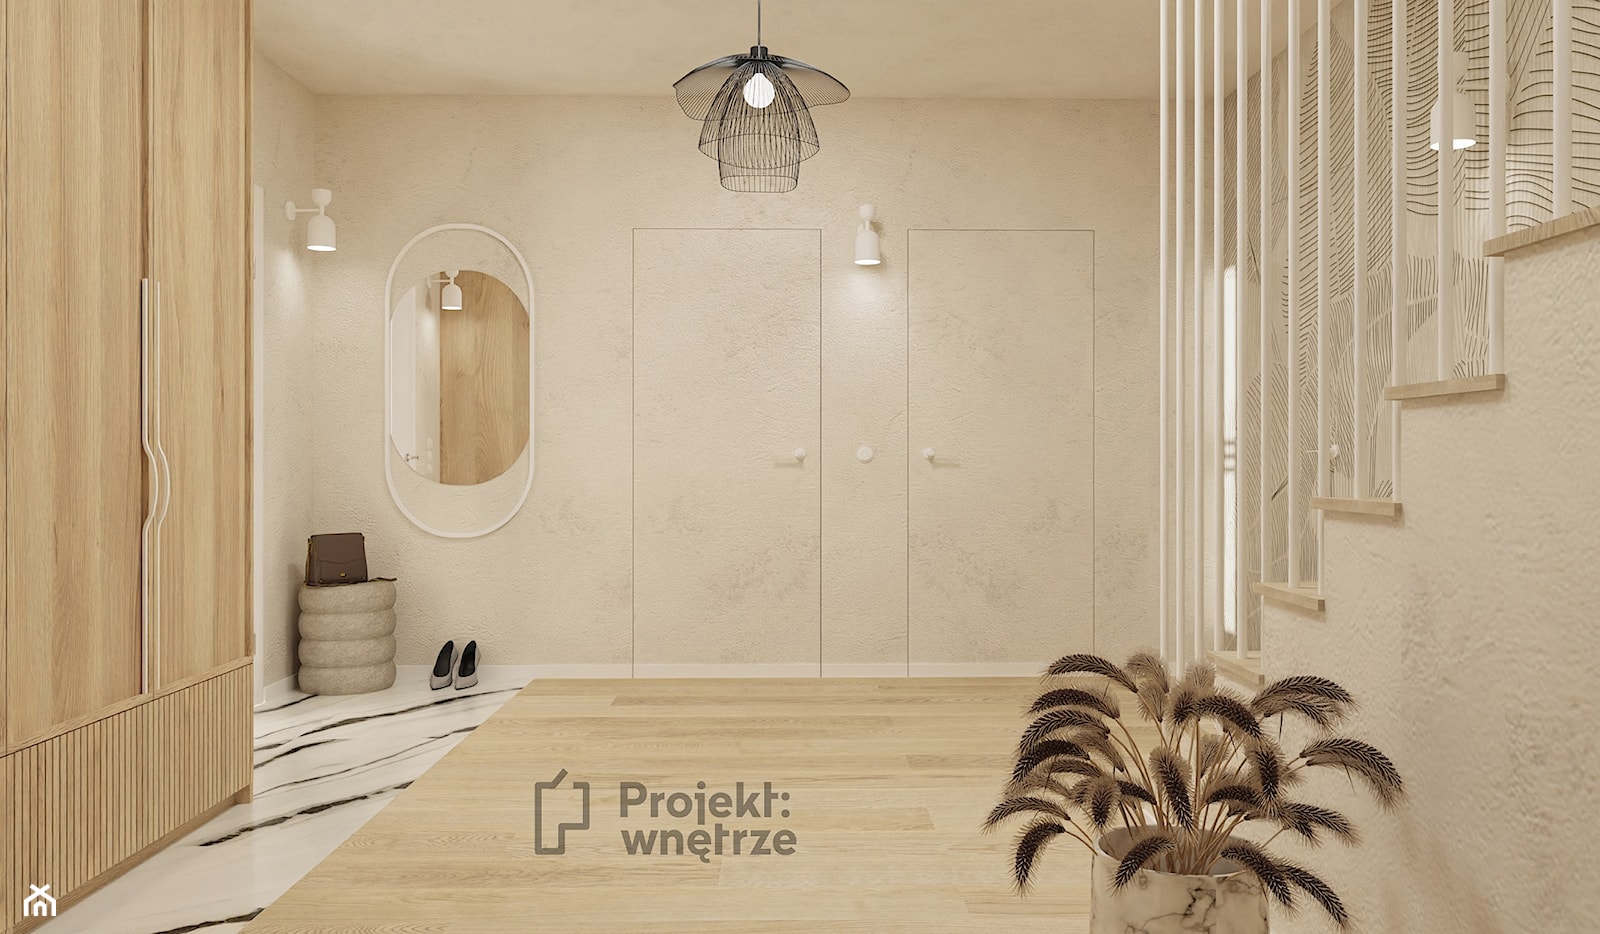 Duży beżowy hol / przedpokój biały z szafą japandi styl minimalistyczny z lustrem z siedziskiem ze schodami z zabudową meblową jasne drewno struktura dekoracyjna drzwi ukryte - PROJEKT: WNĘTRZE - zdjęcie od PROJEKT: WNĘTRZE - Homebook